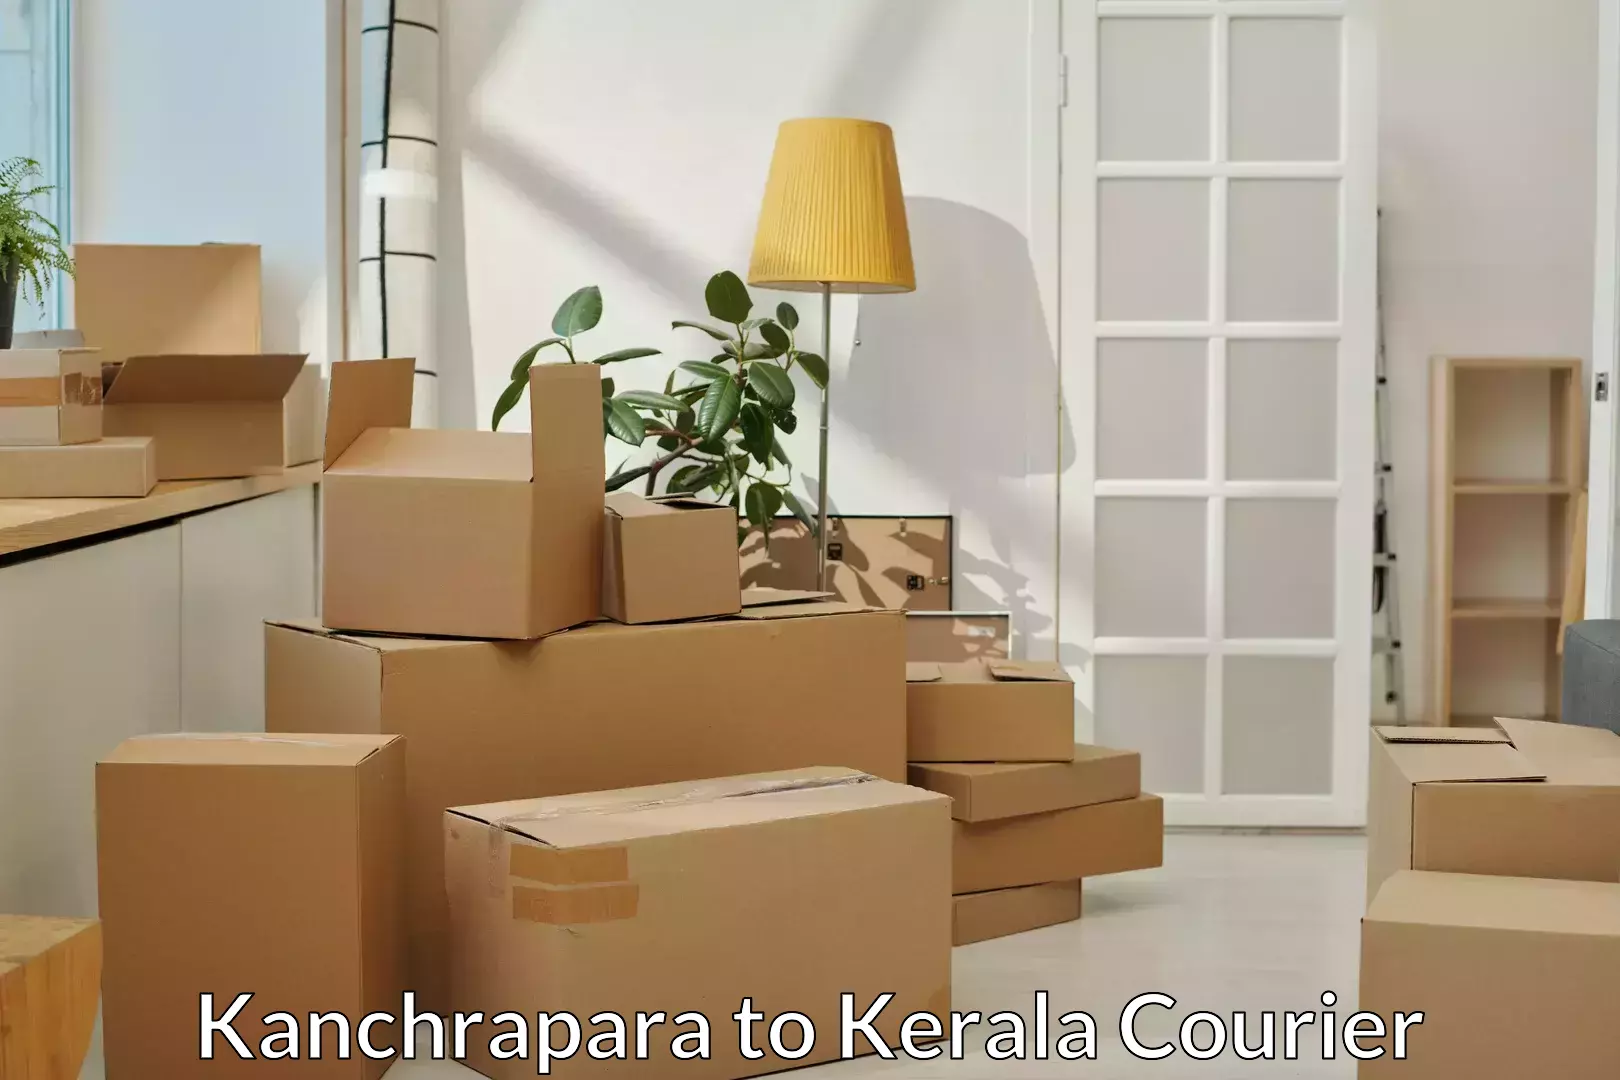 Budget-friendly moving services Kanchrapara to Parakkadavu